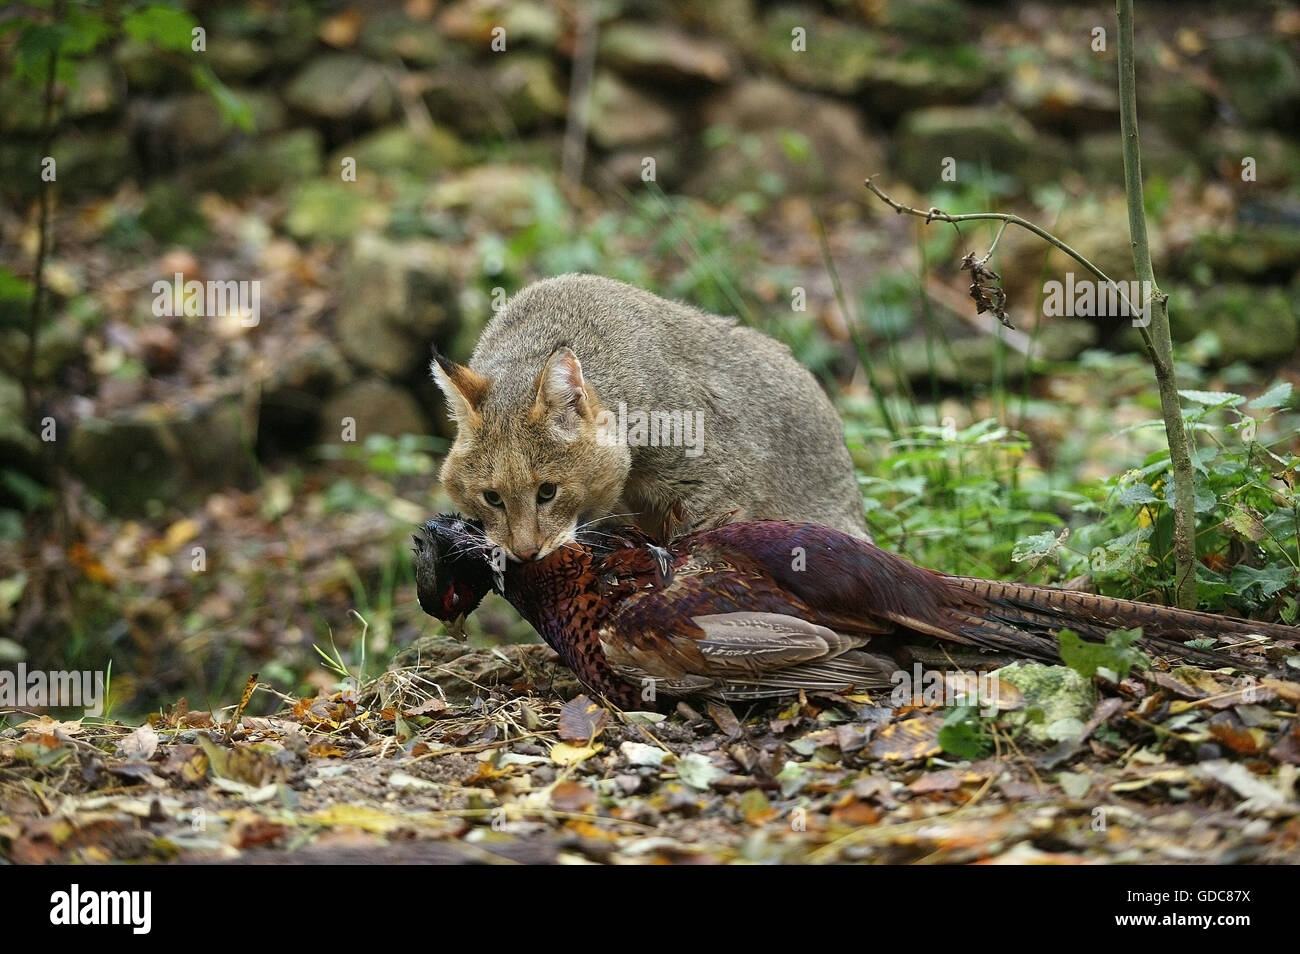 Dschungelkatze Felis Chaus, Erwachsene mit A KILL A gemeinsame Fasan Phasianus colchicus Stockfoto